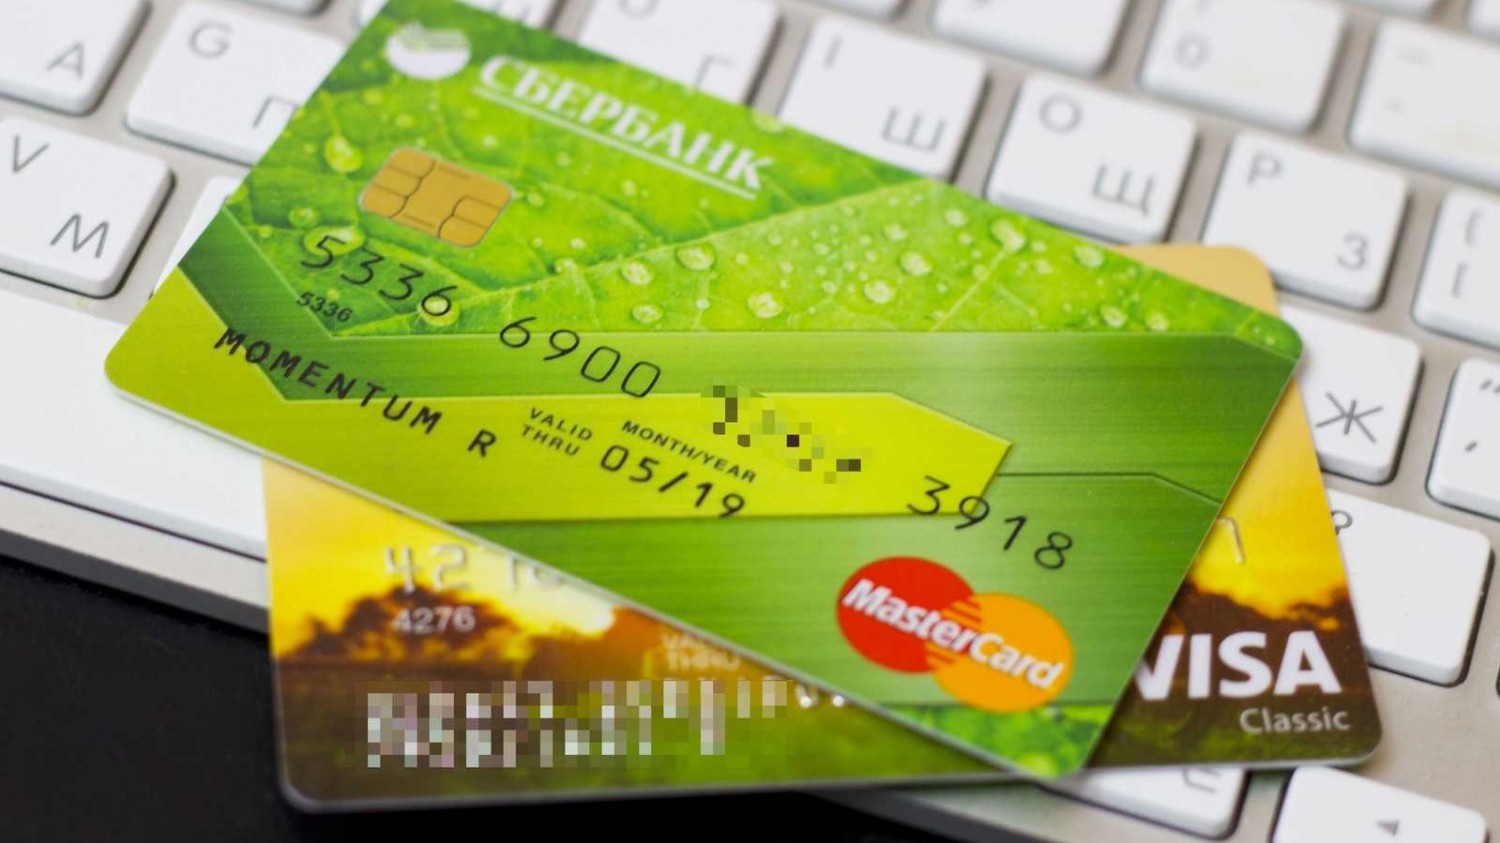 «Сбербанк» объявил о возможной утечке данных клиентов. Могут быть затронуты 60 млн карт